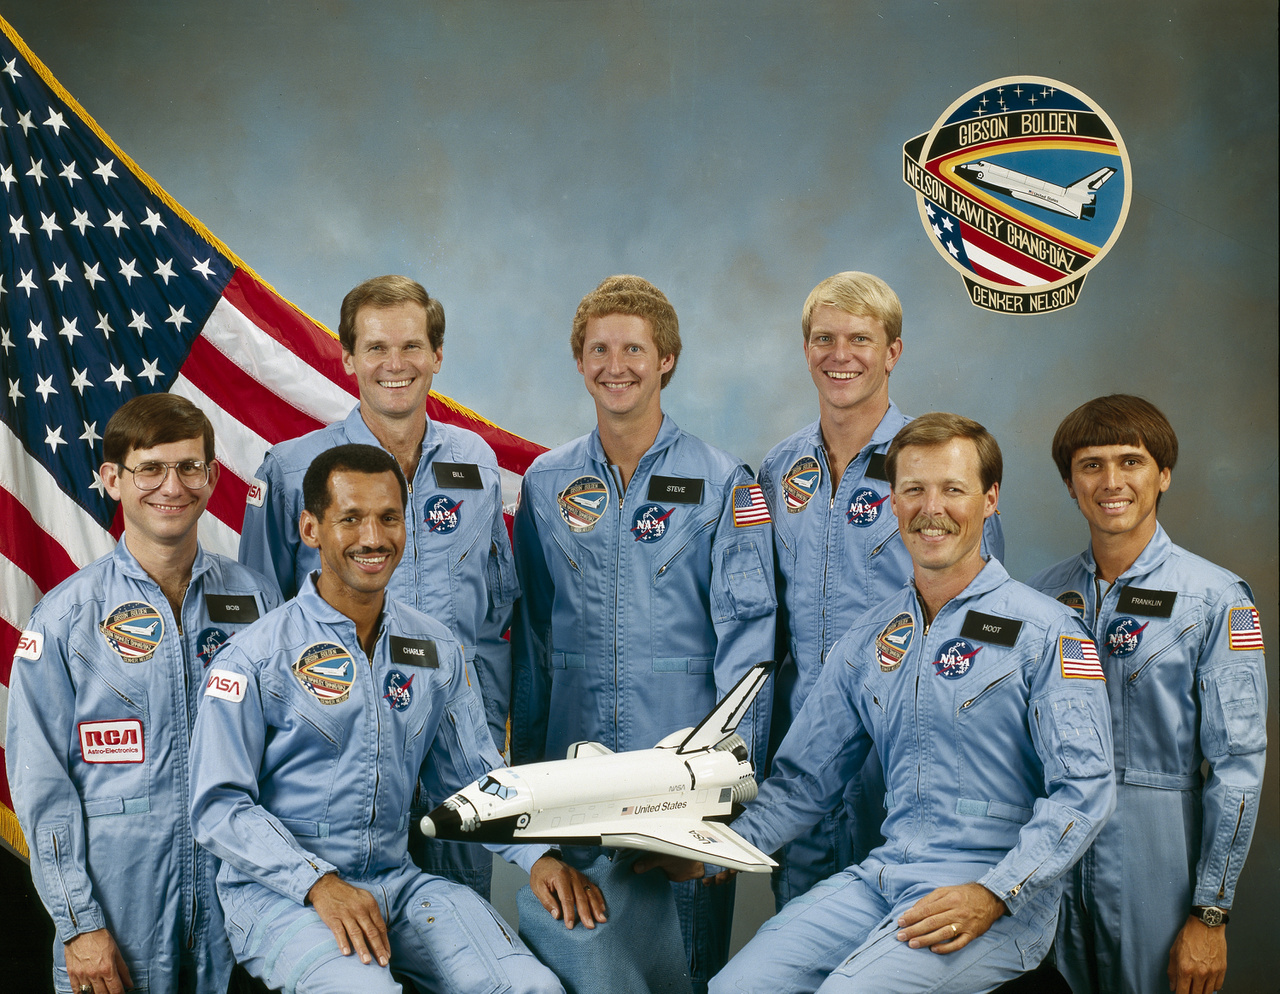 1985. december 8-i hivatalos csoportképen az STS-61C küldetés hét űrhajósa.
                        A Columbia modellje mellett balról Bolden, a pilóta, jobbról Robert L. (Hoot) Gibson, a küldetés parancsnoka. Körülöttük balról jobbra: Robert J. Cenker, Bill Nelson (kongresszusi képviselő), valamint Steven A. Hawley, George D. Nelson, és Franklin R. Chang-Diaz.